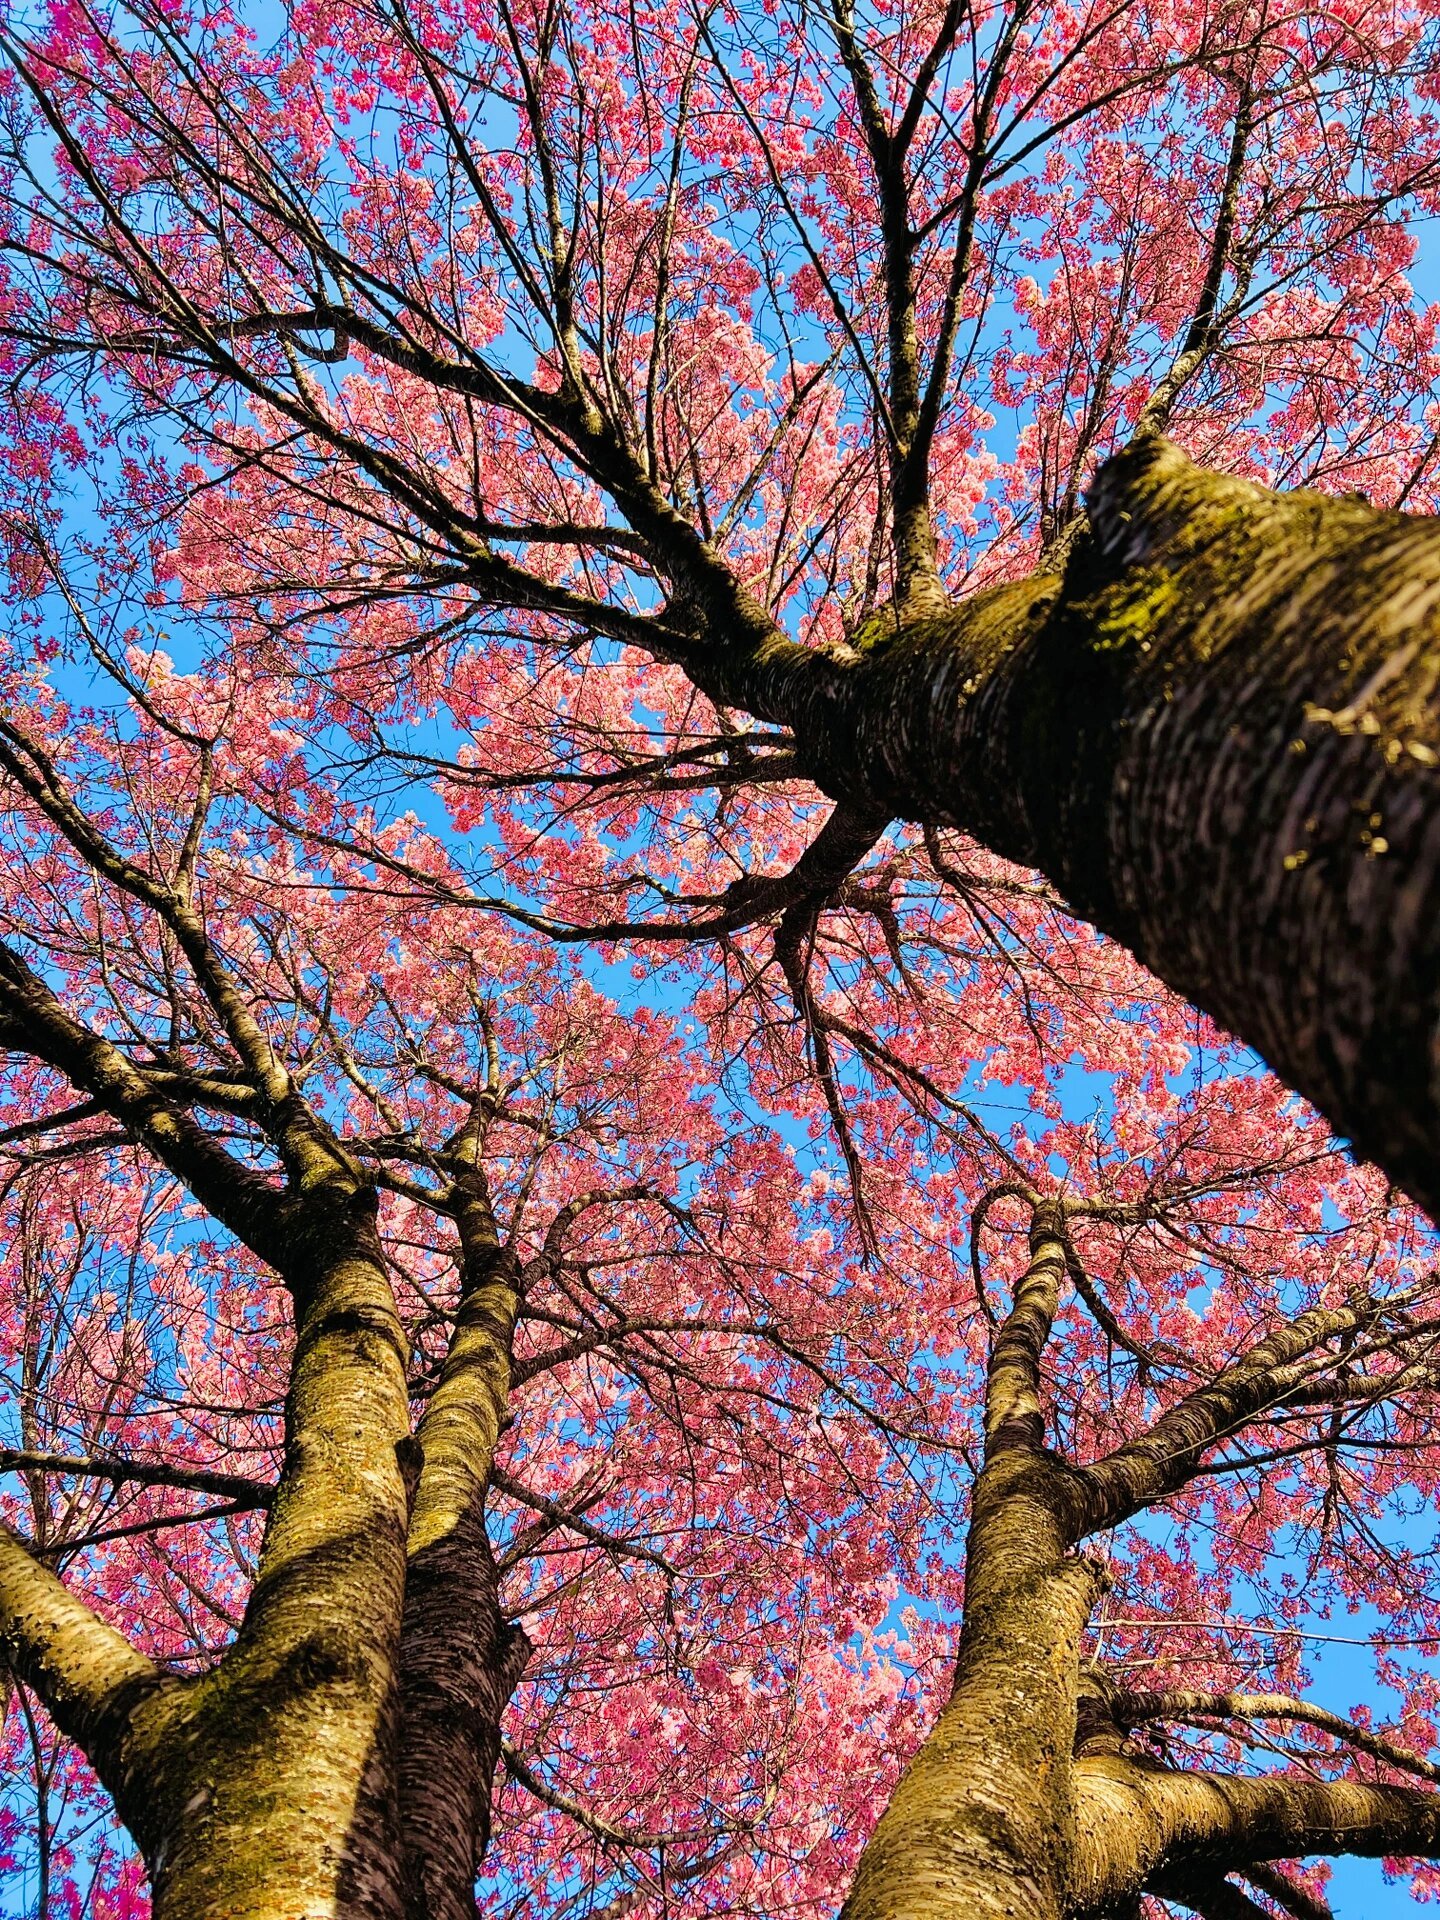 春日暖阳下,一棵高大的樱花树矗立在道旁,粉色的花朵簇拥在枝头,与